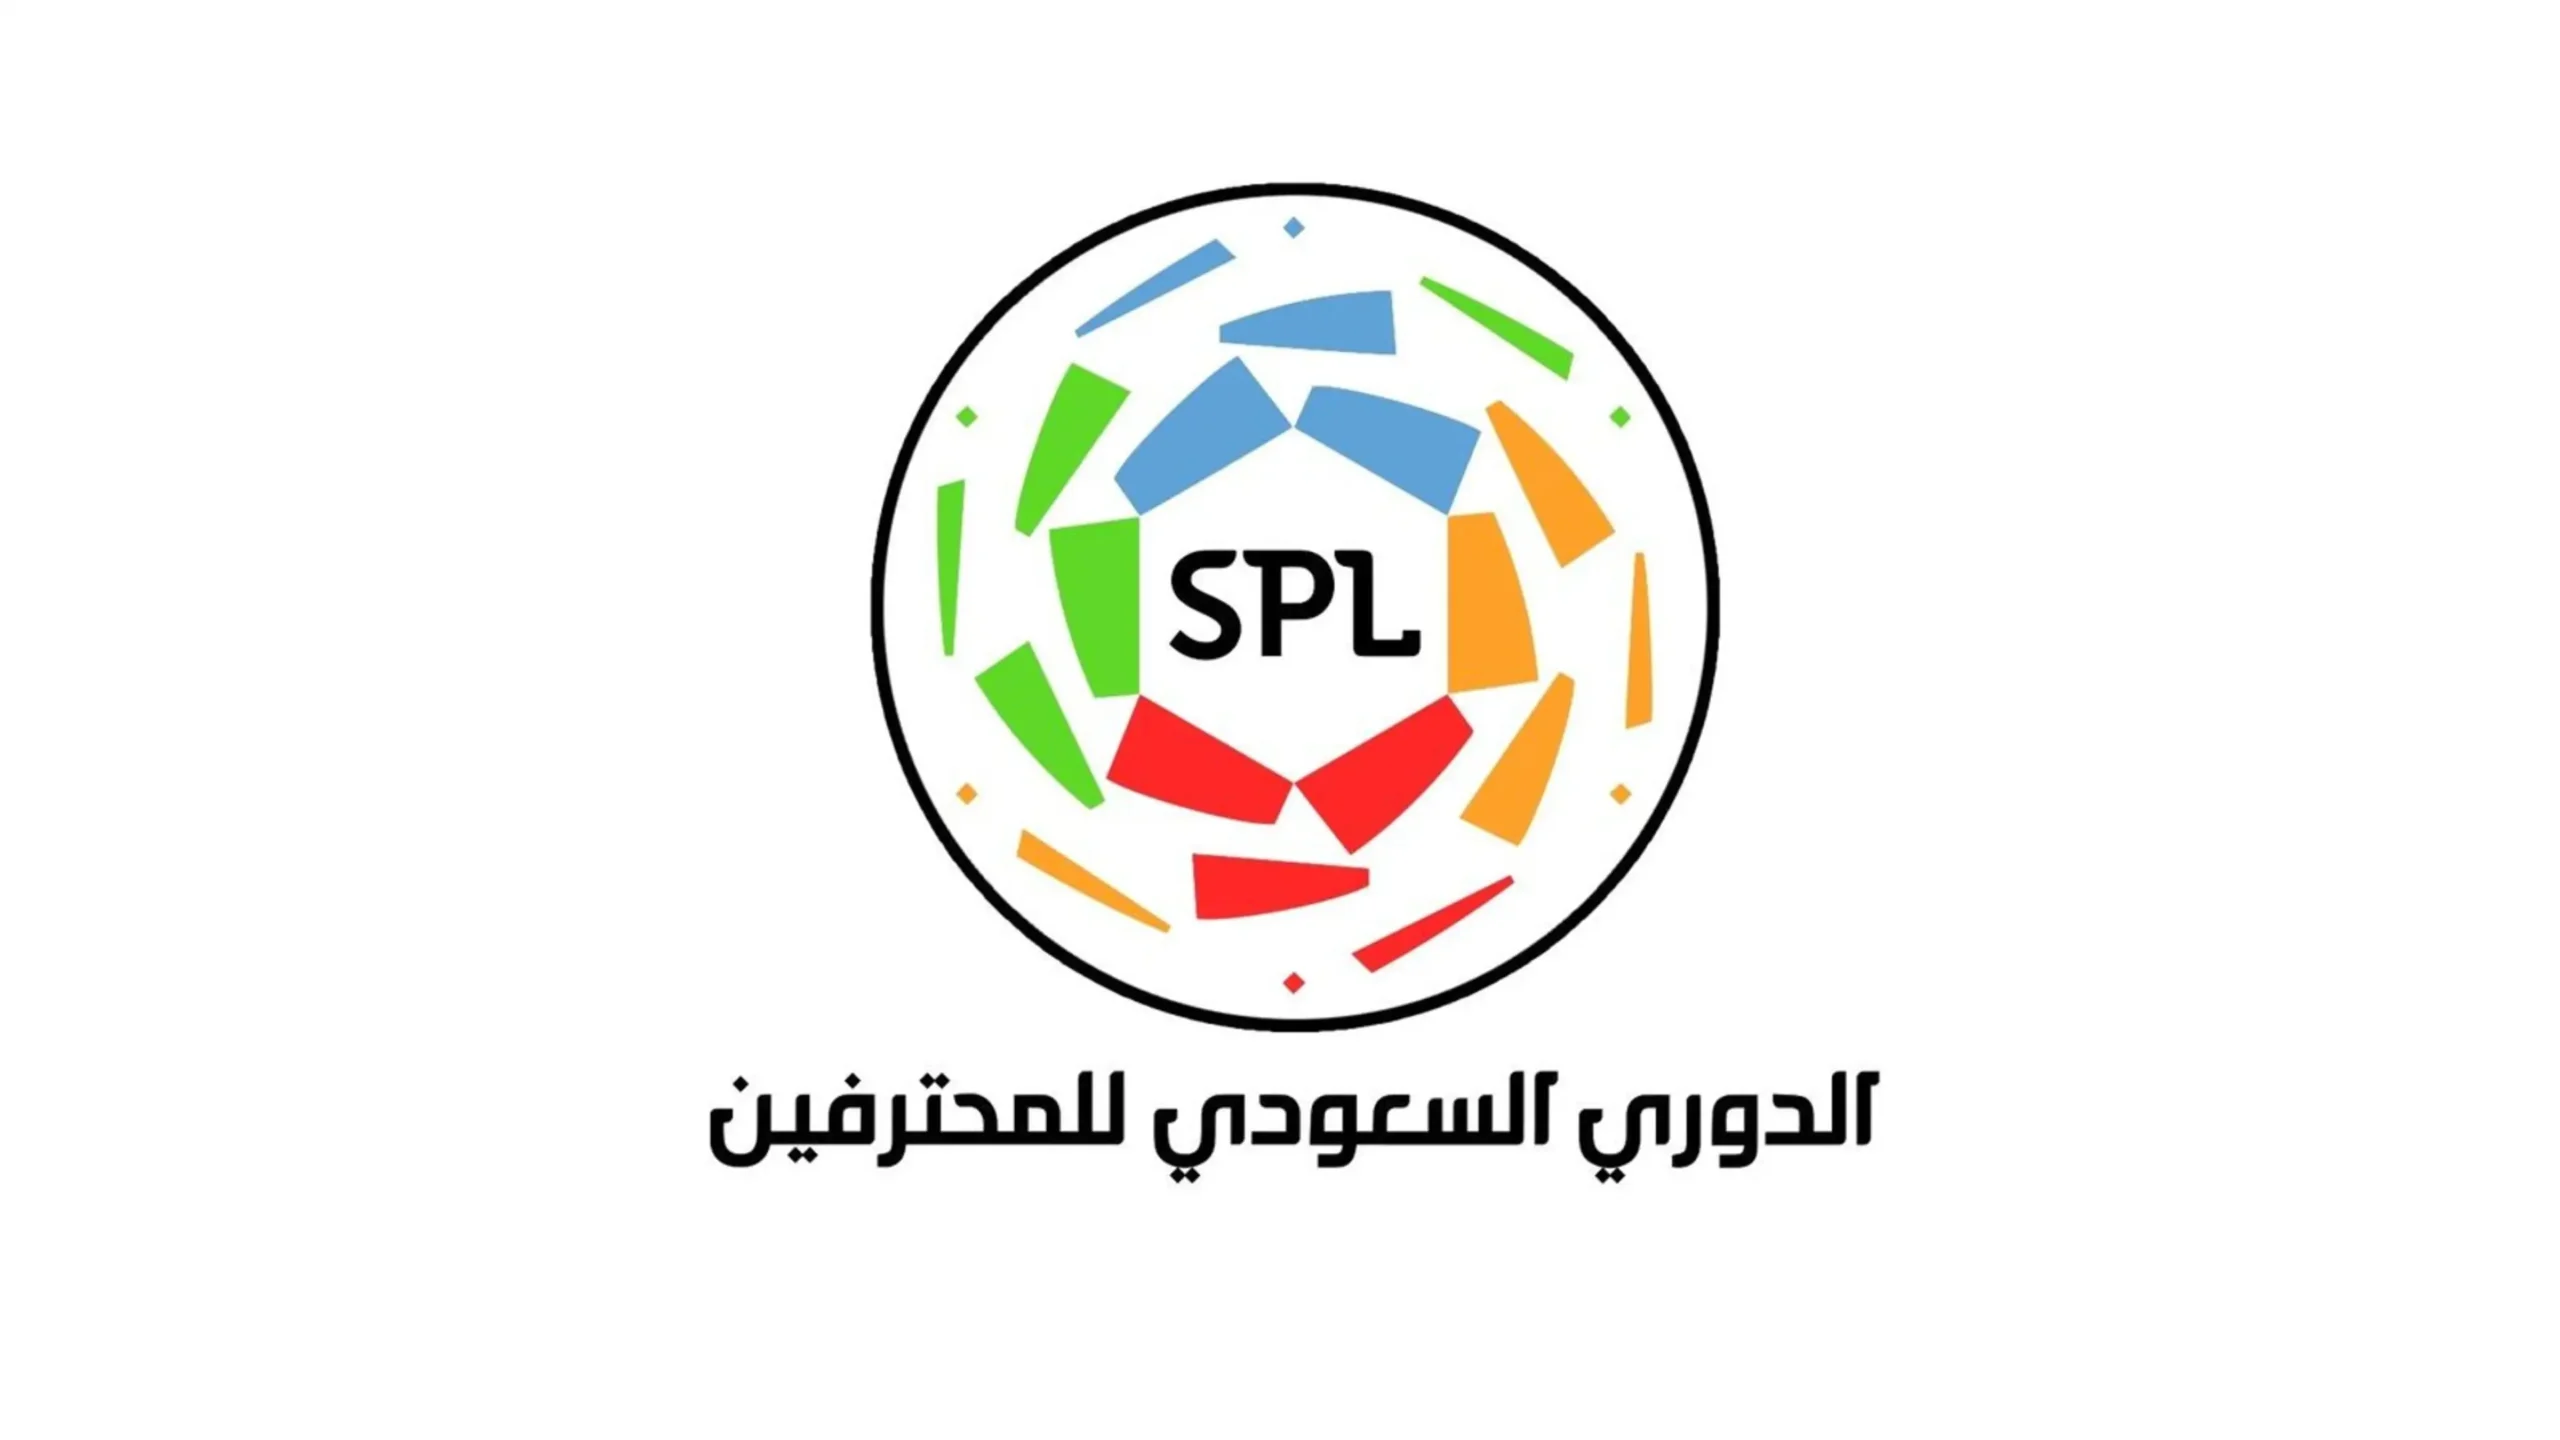  الدورى السعودى للمحترفين – Saudi Arabia Pro